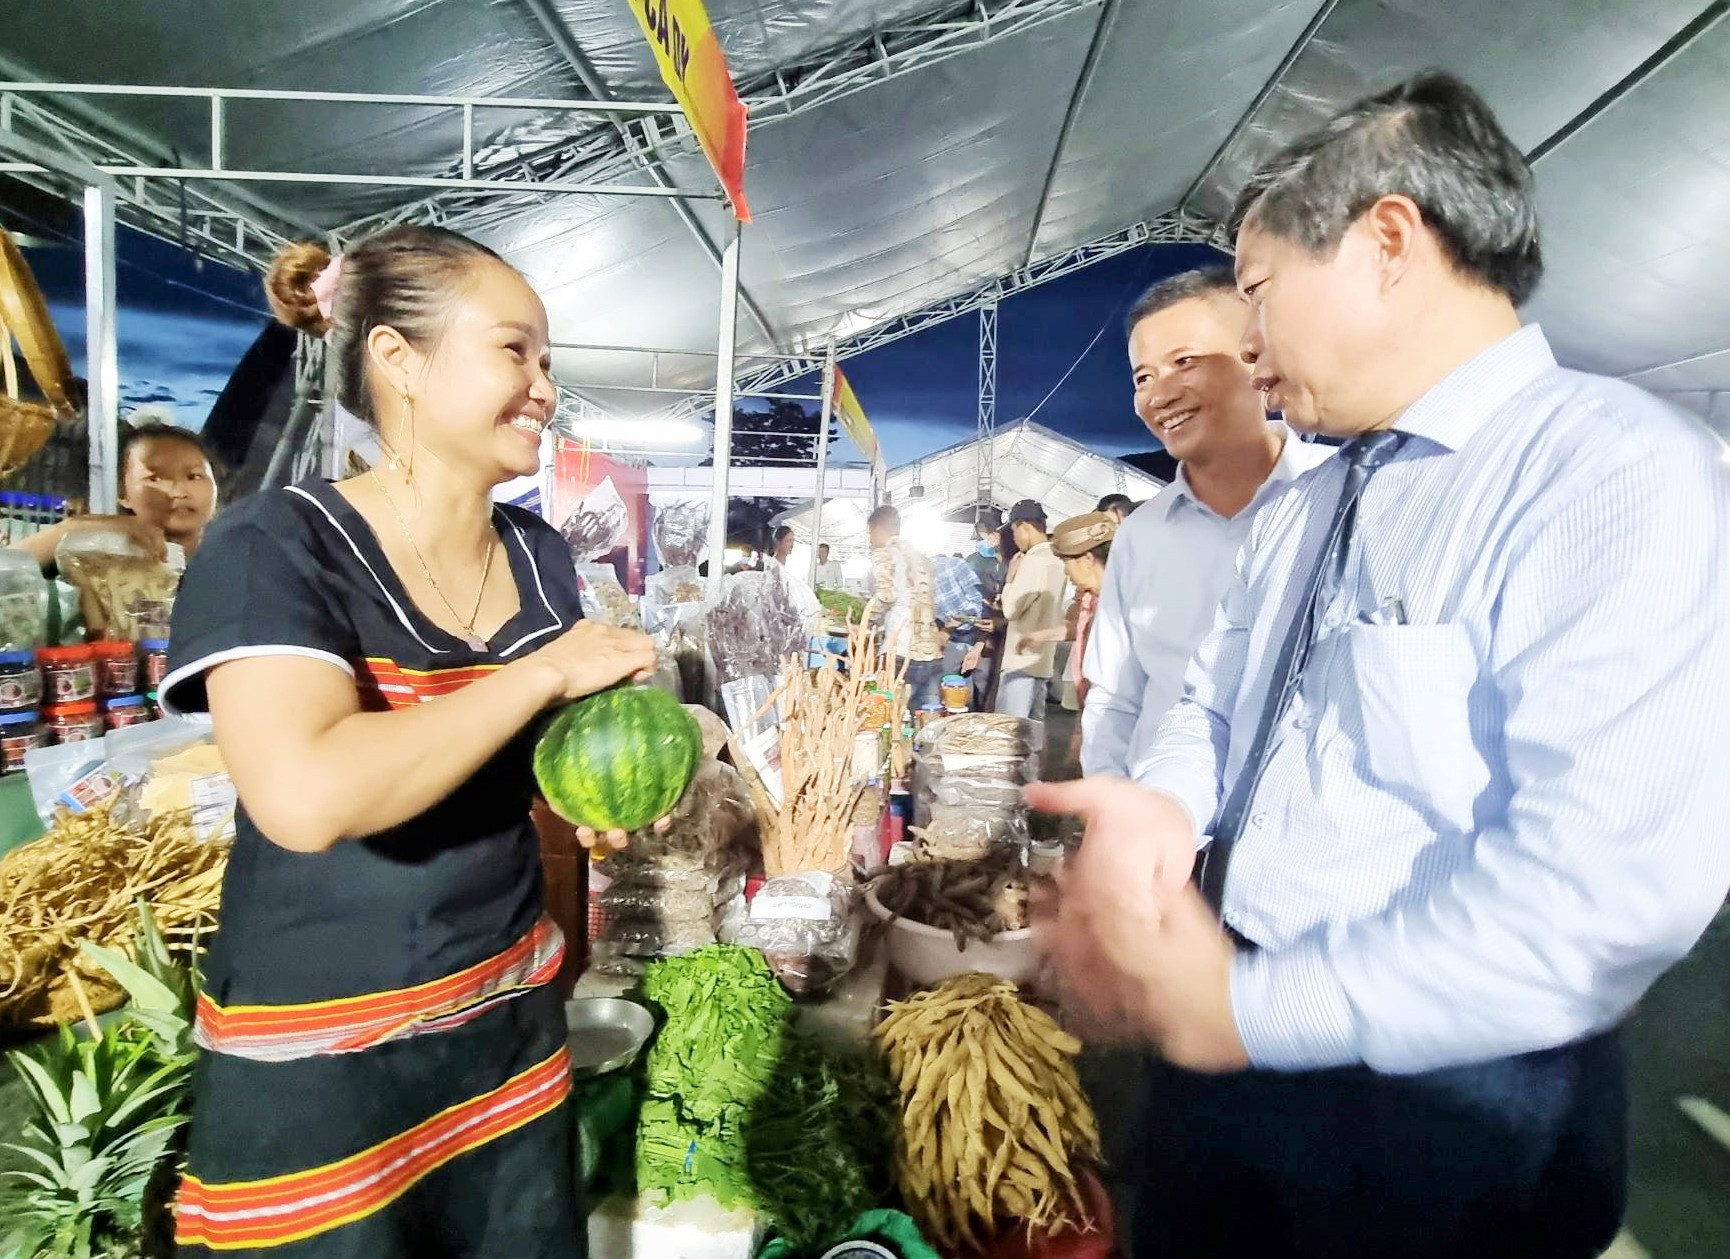 Phiên chợ đêm Nam Giang được kỳ vọng sẽ mang đến không gian văn hóa, ẩm thực độc đáo thu hút du khách. Ảnh: ALĂNG NGƯỚC